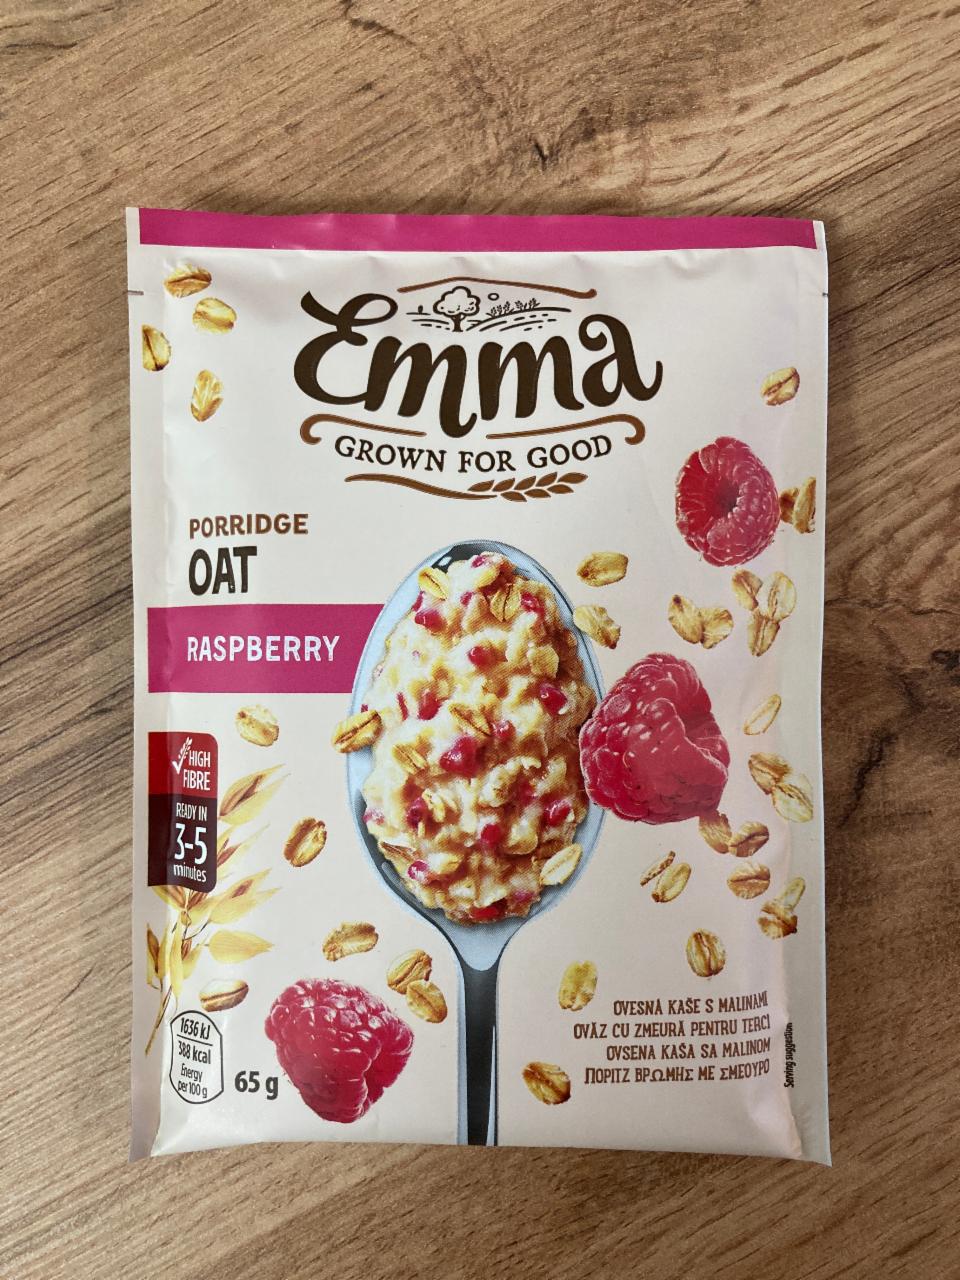 Fotografie - Porridge Oat Raspberry Emma Grown For Good